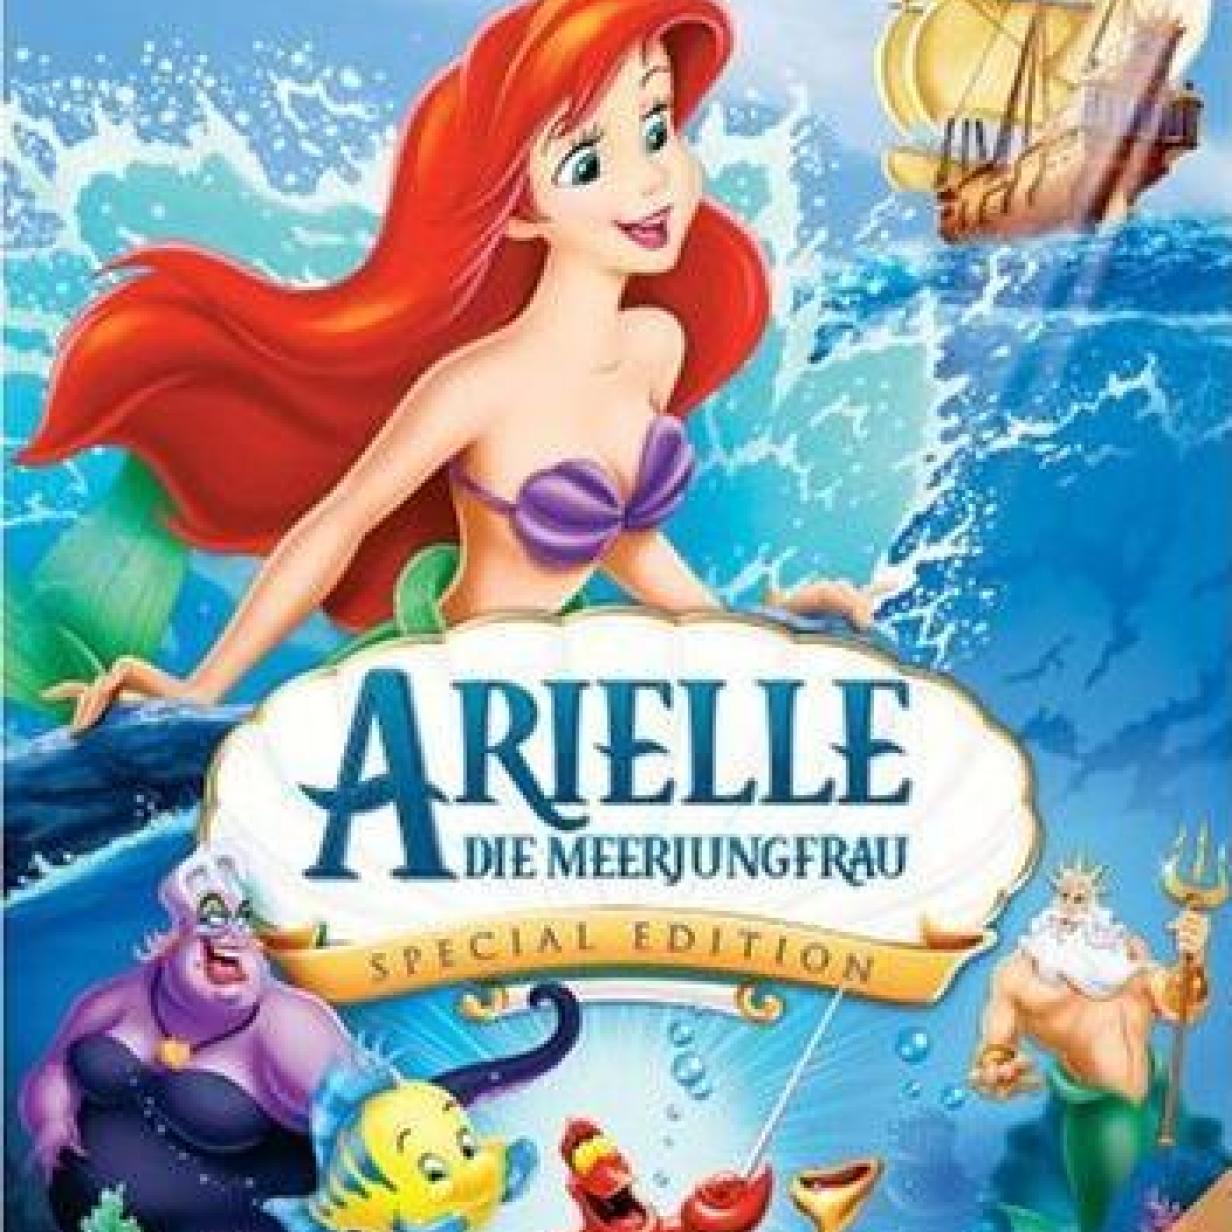 Disney bestätigt Cast für “Arielle” Realverfilmung   film.at